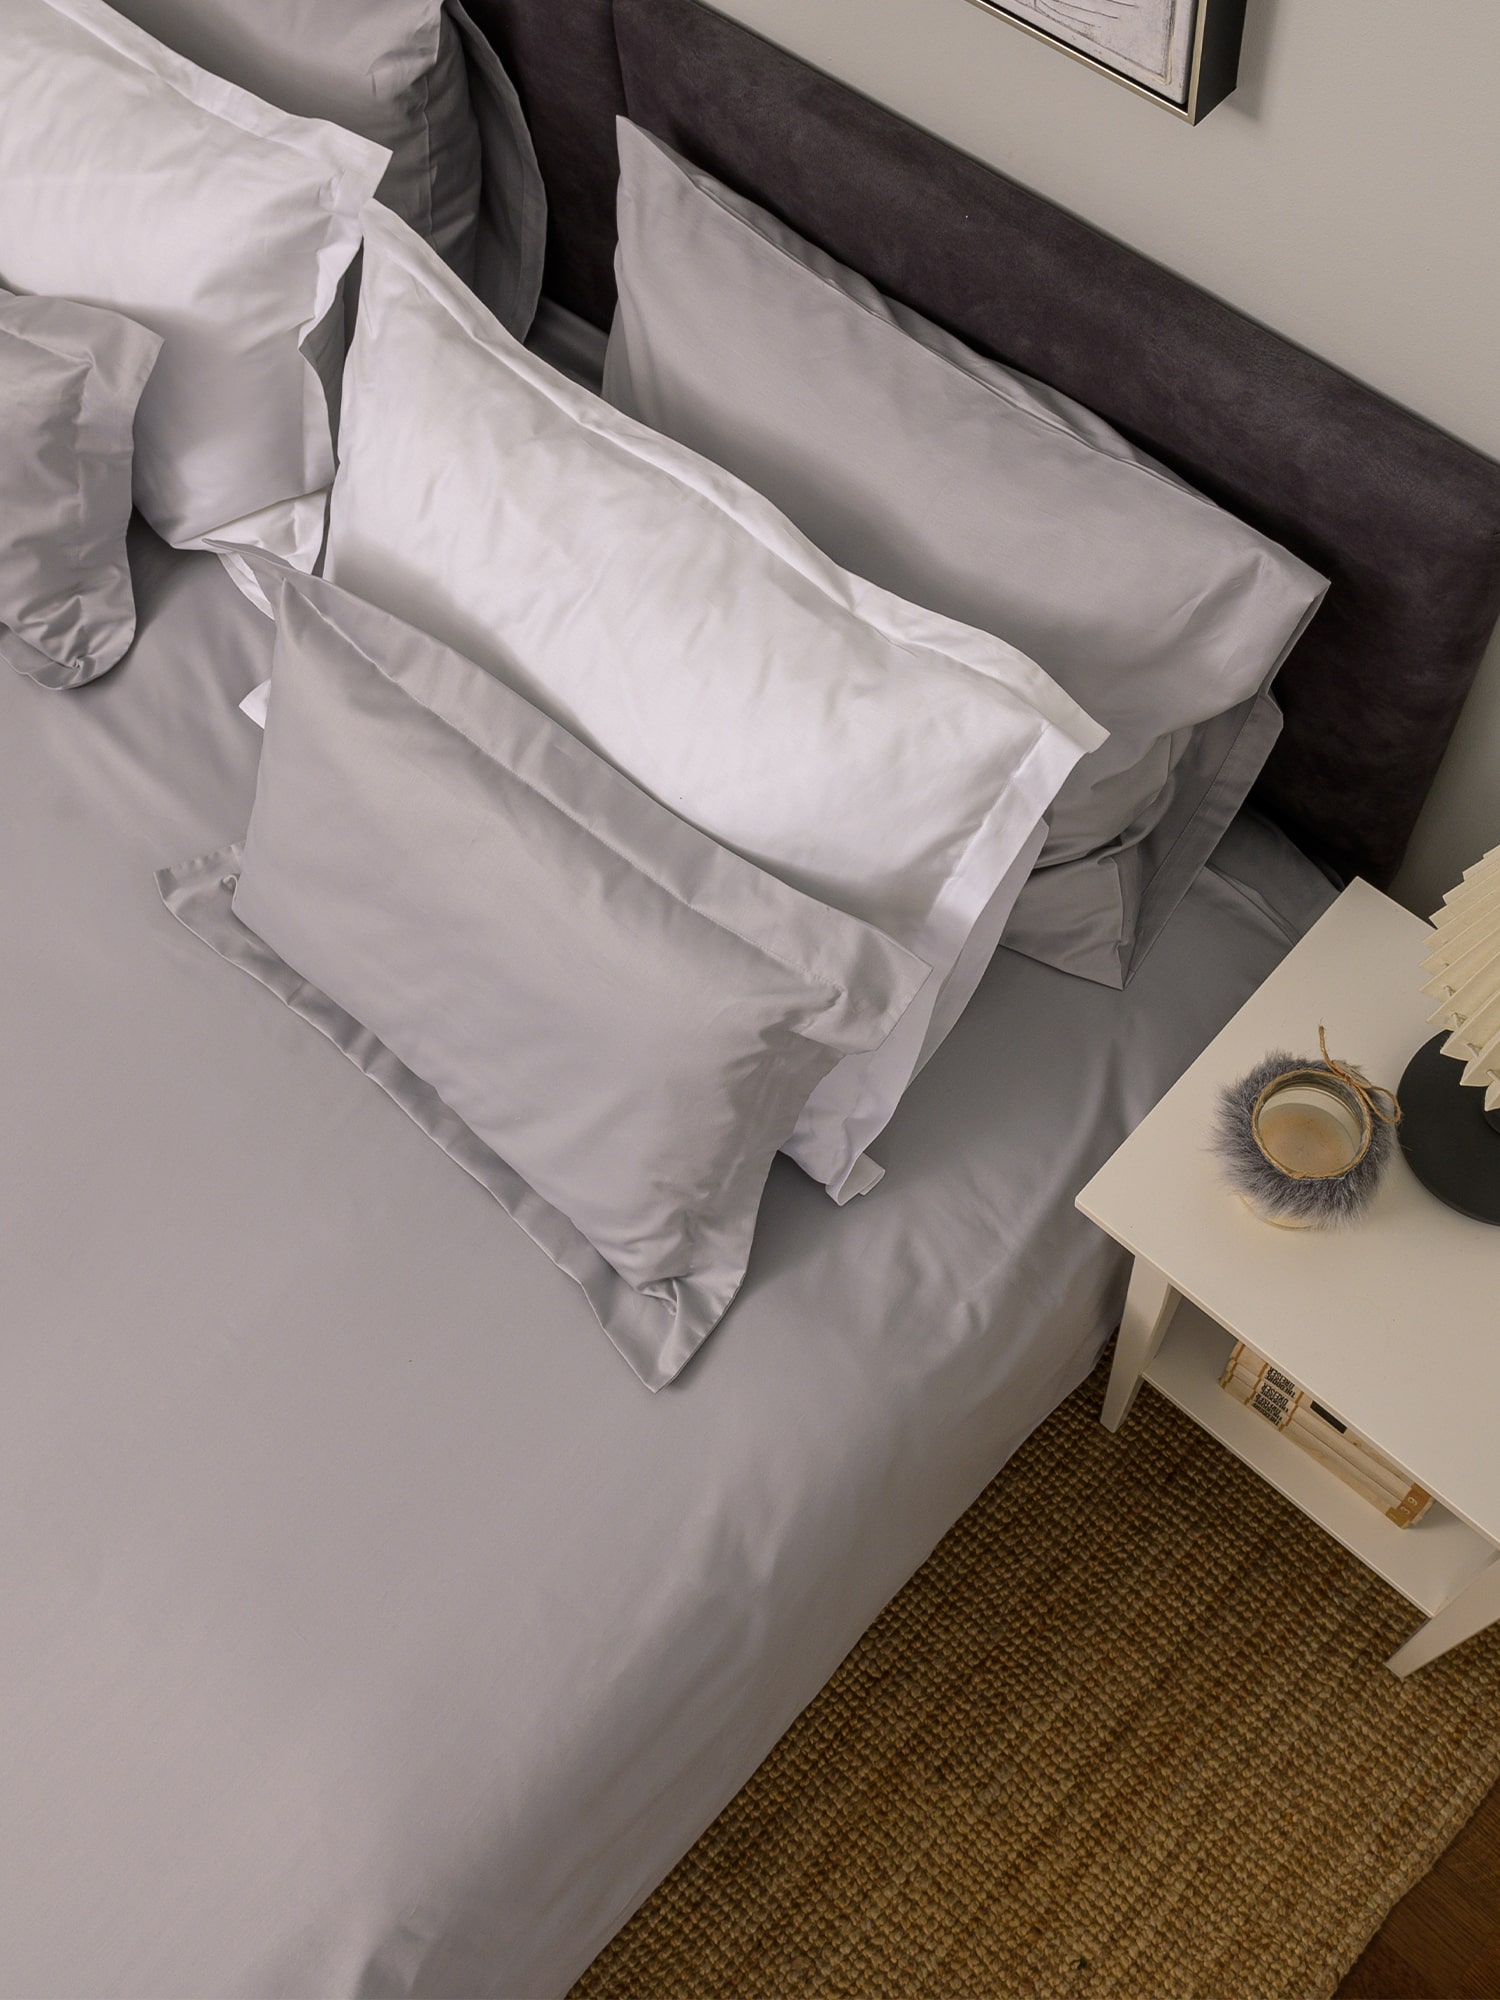 svijetlo siva srebrna damast posteljina plahta jastučnica 100 posto pamuk damast frette